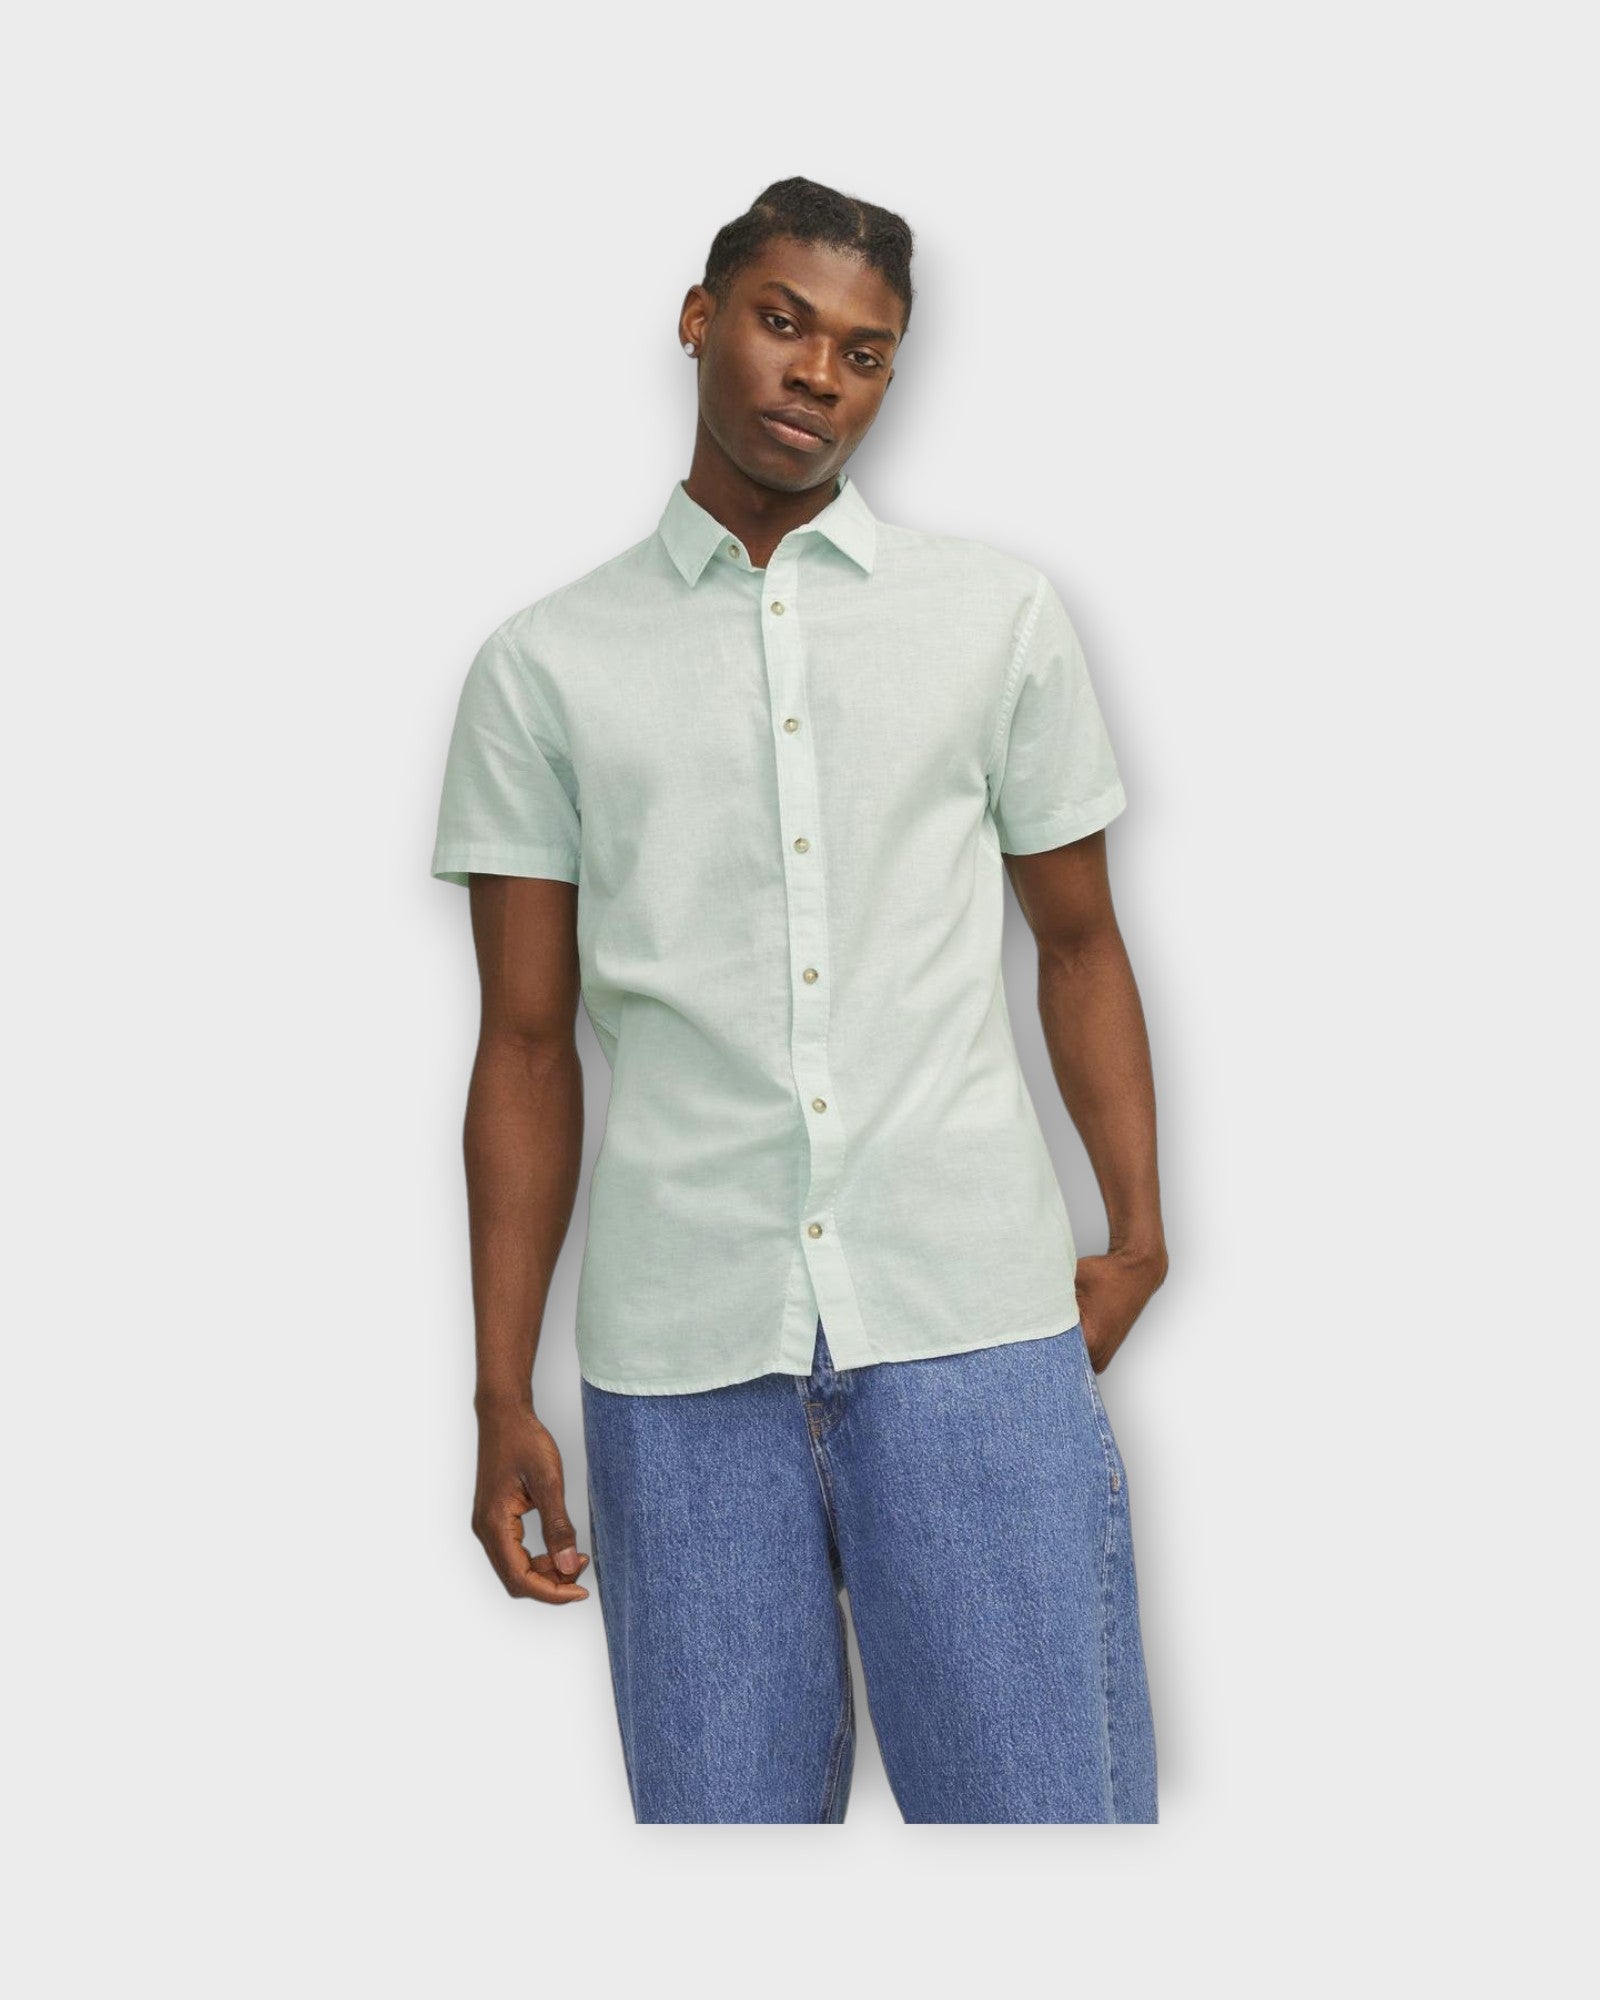 Summer Linen Shirt Soothing Sea fra Jack and Jones. Kortærmet lys grøn hørskjorte til mænd. Her set på model i closeup.